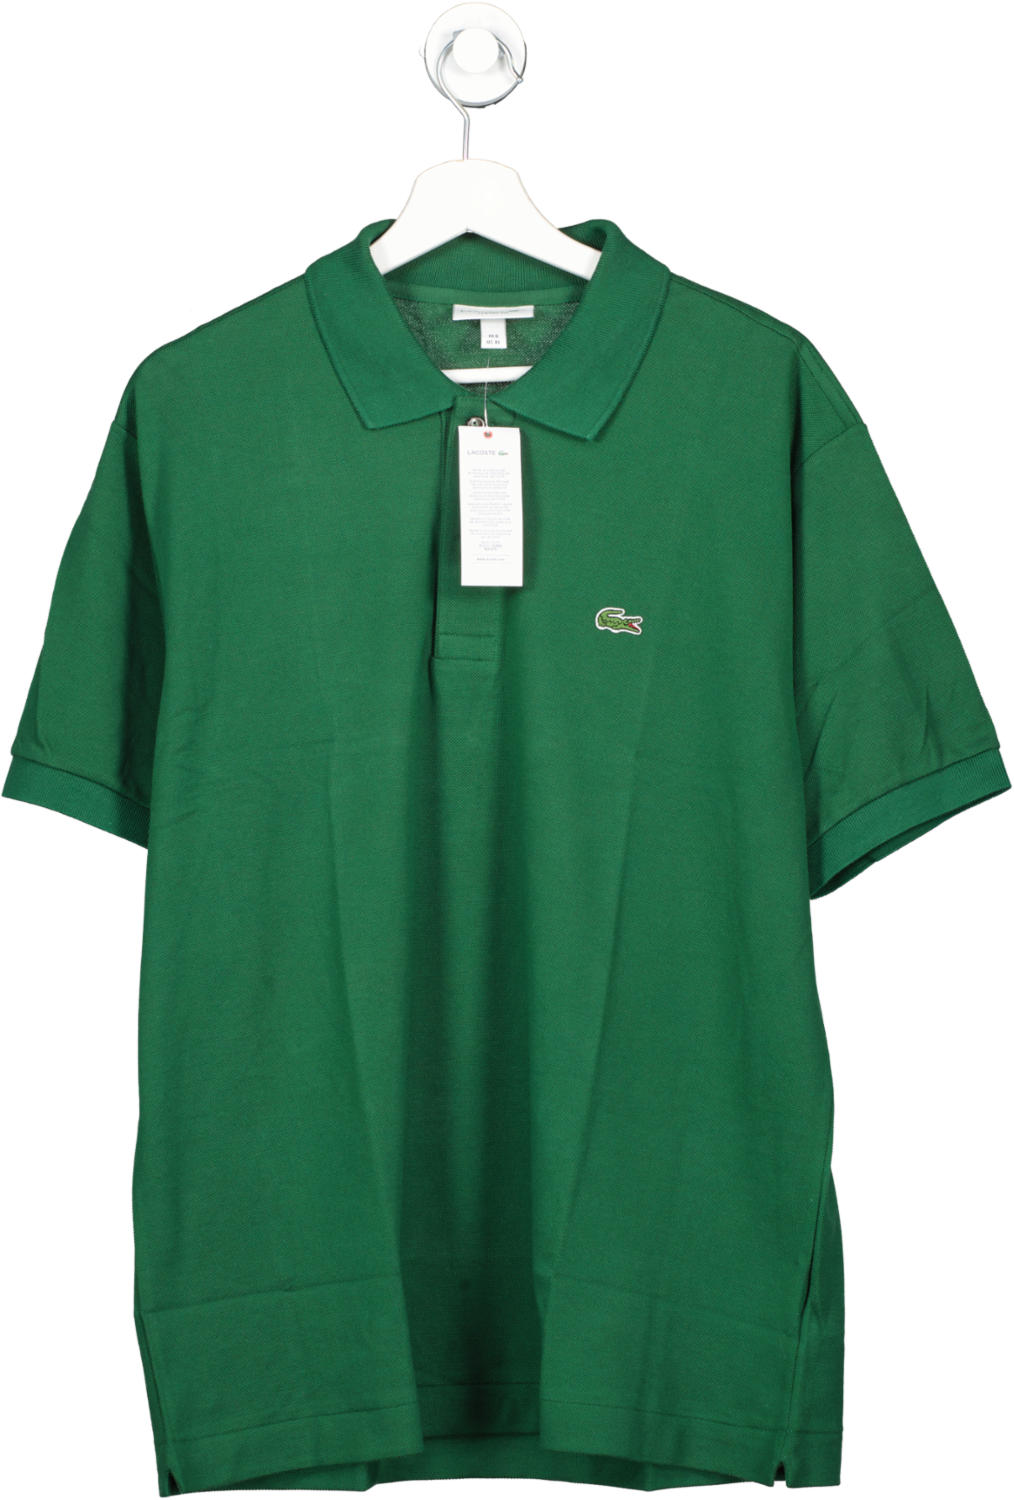 Lacoste Polo Shirt Pique Mid Green BNWT UK XL